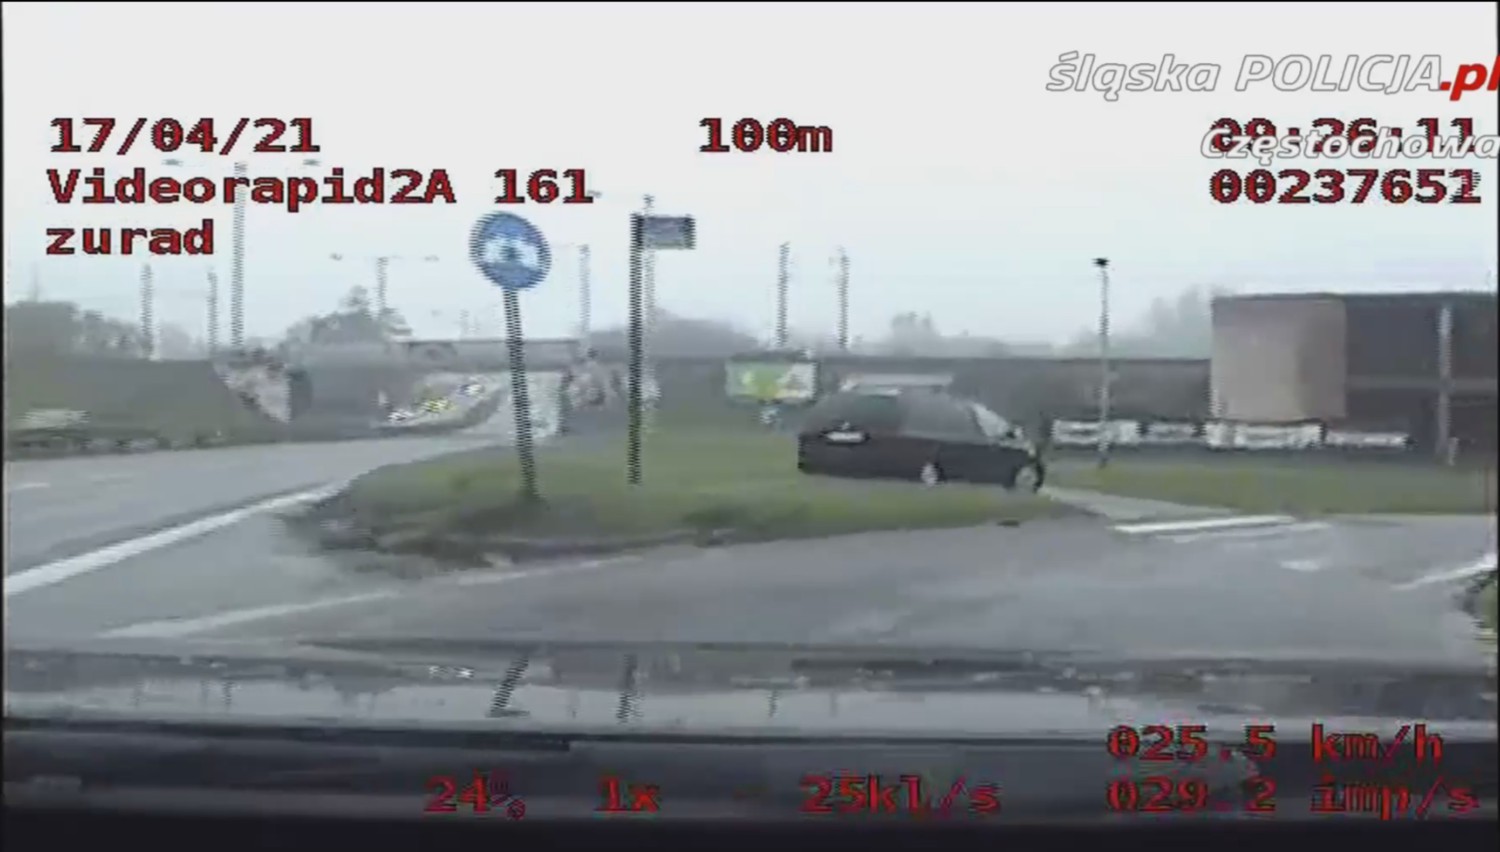 Częstochowska policja opublikowała nagranie brawurowej jazdy pijanego kierowcy 2